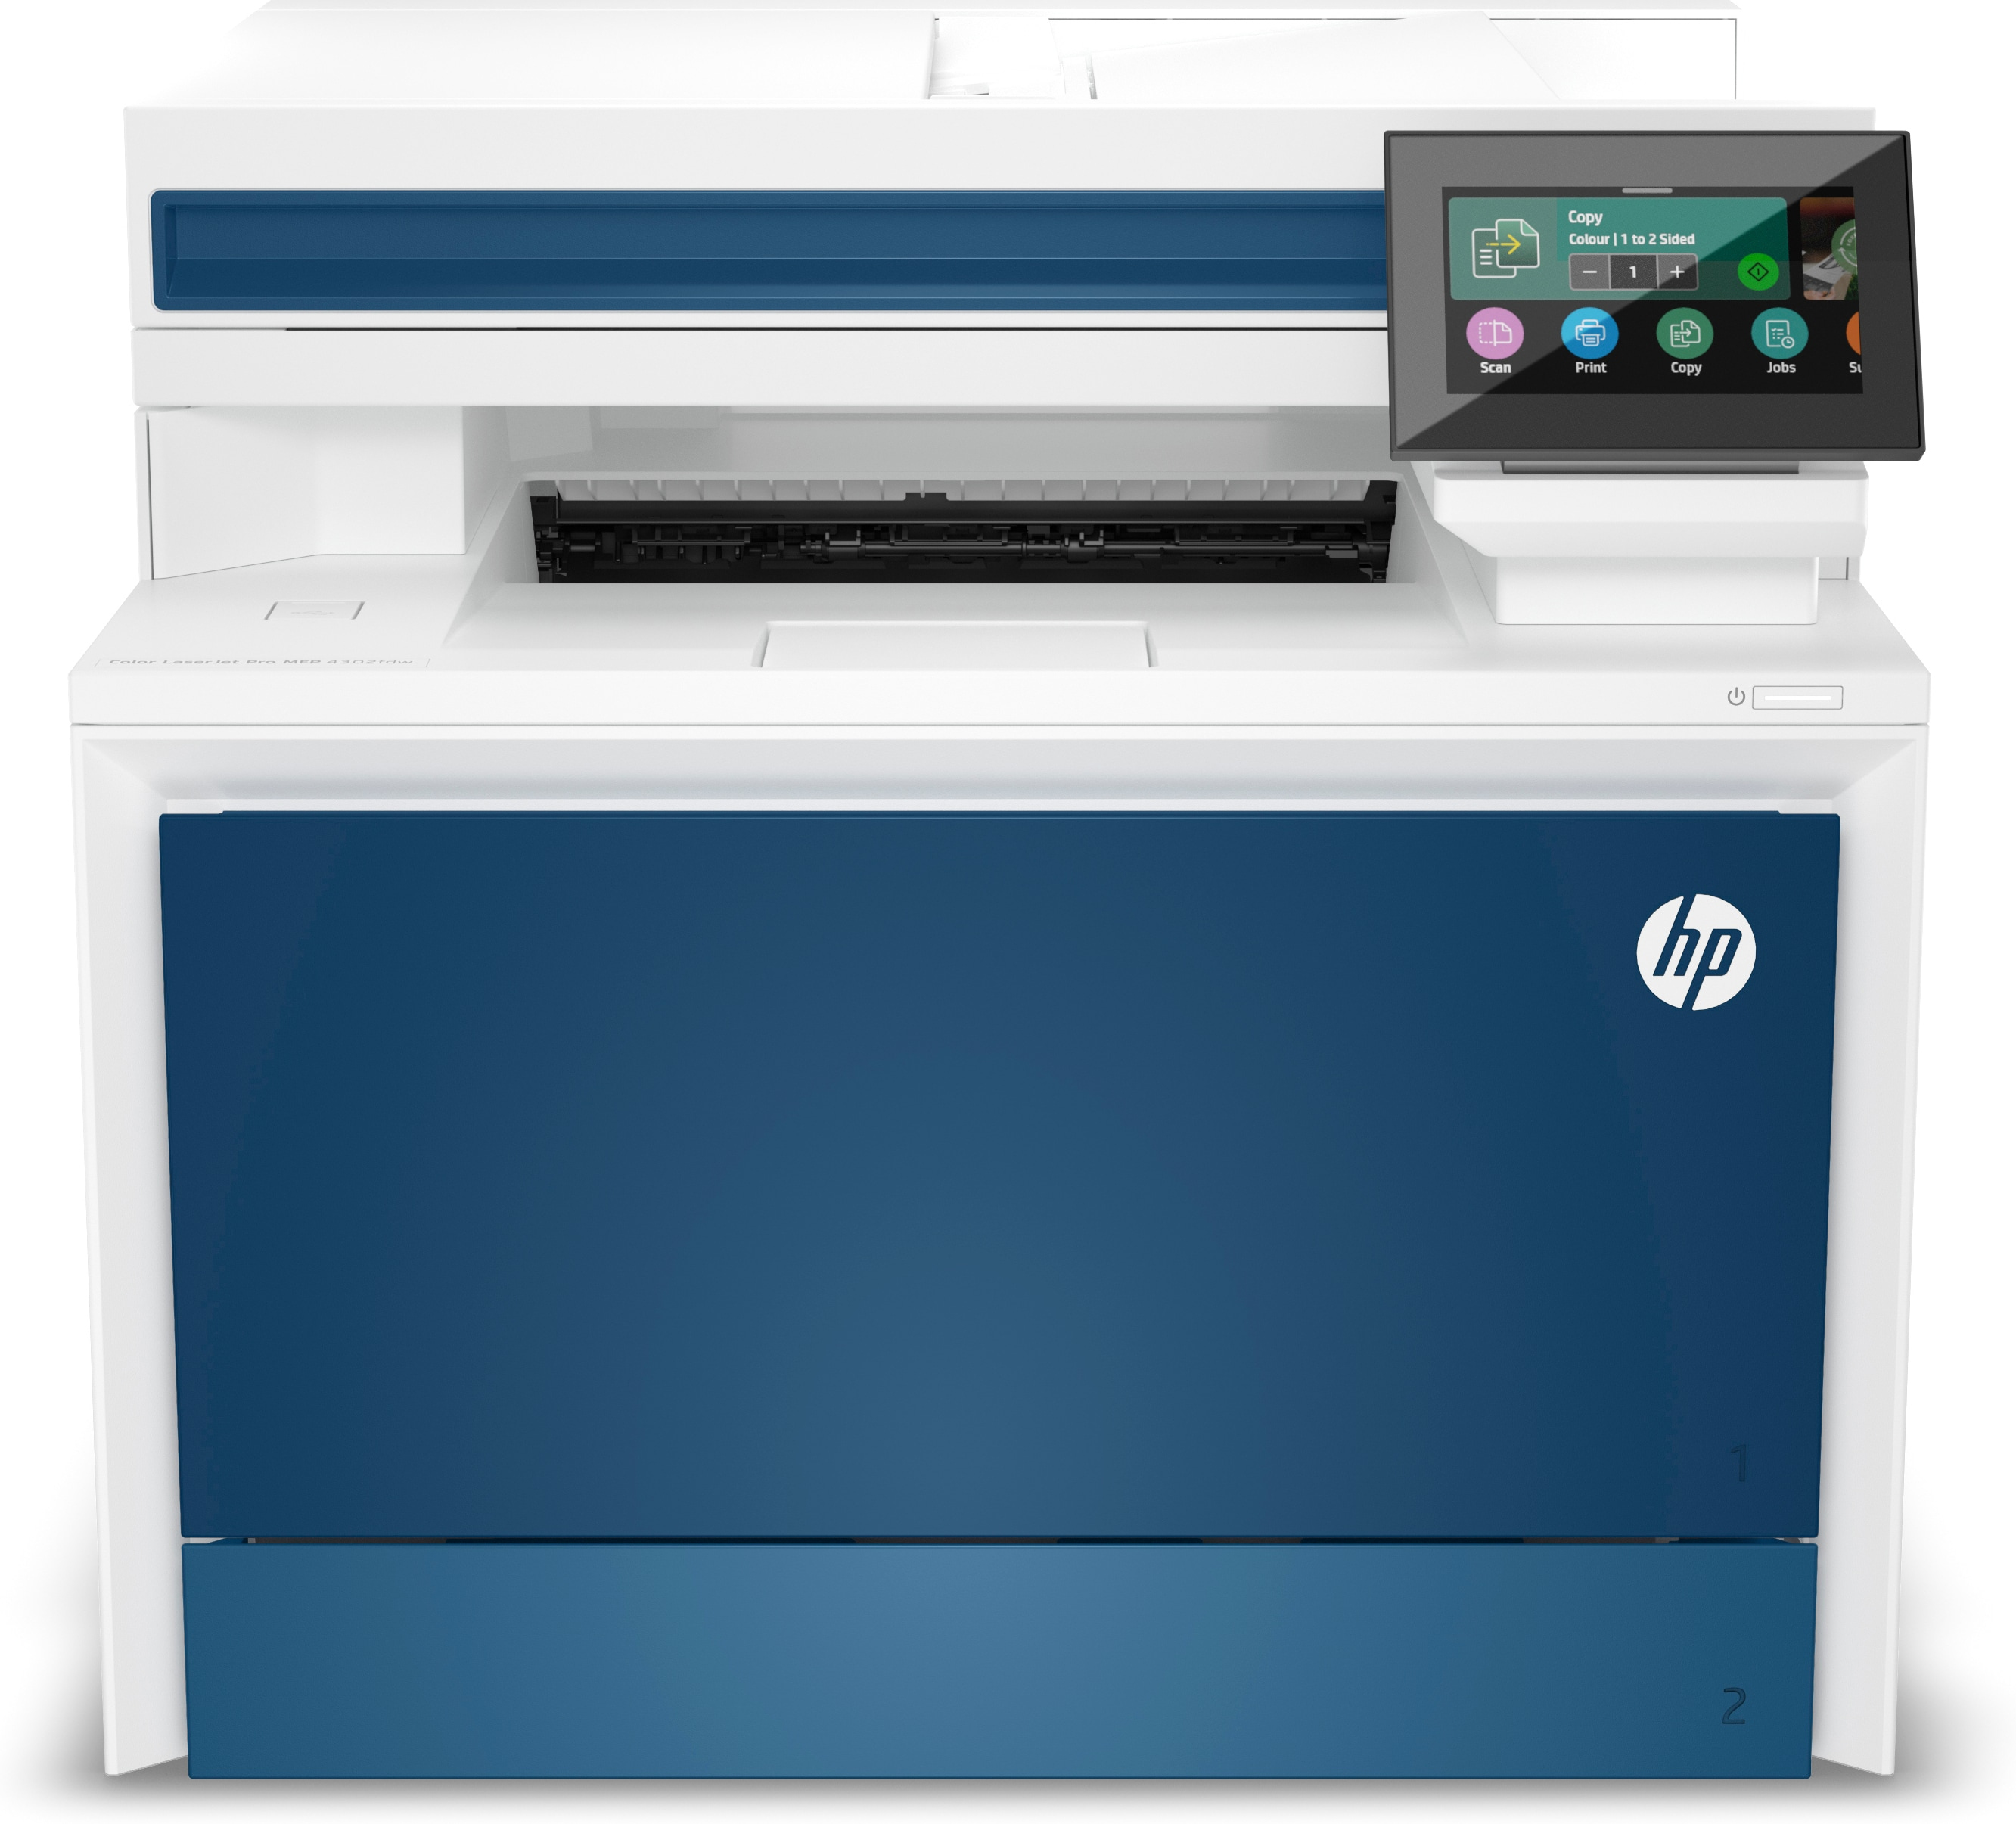 Image of HP Color LaserJet Pro Stampante multifunzione 4302fdw, Colore, Stampante per Piccole e medie imprese, Stampa, copia, scansione, fax, Wireless; Stampa da smartphone o tablet; alimentatore automatico di documenti